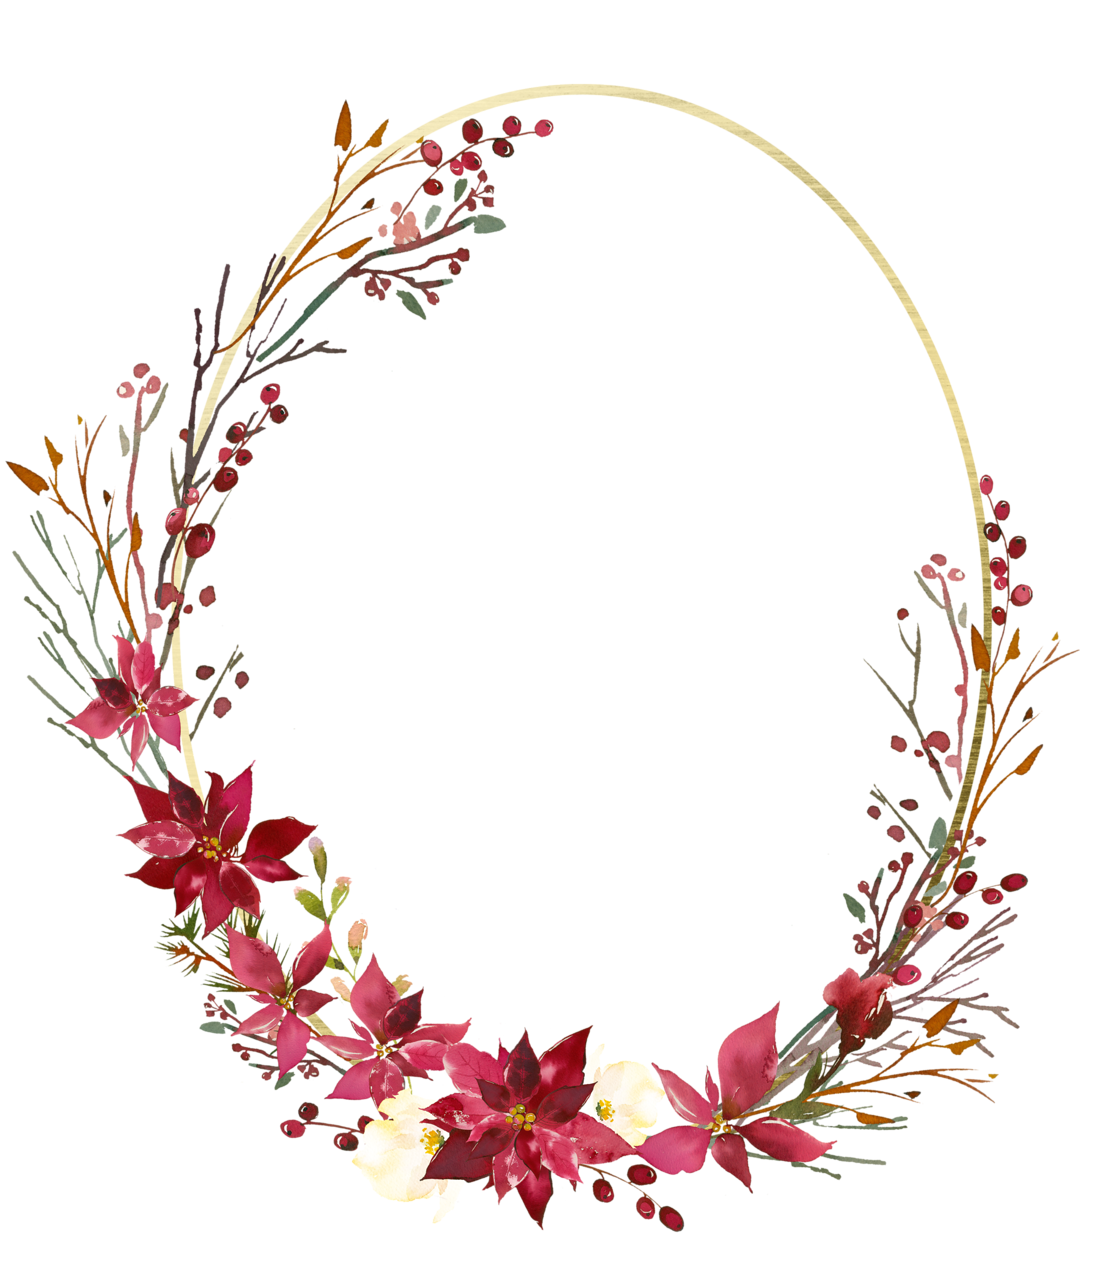 Floral frame PNG transparent image download, size: 1093x1280px